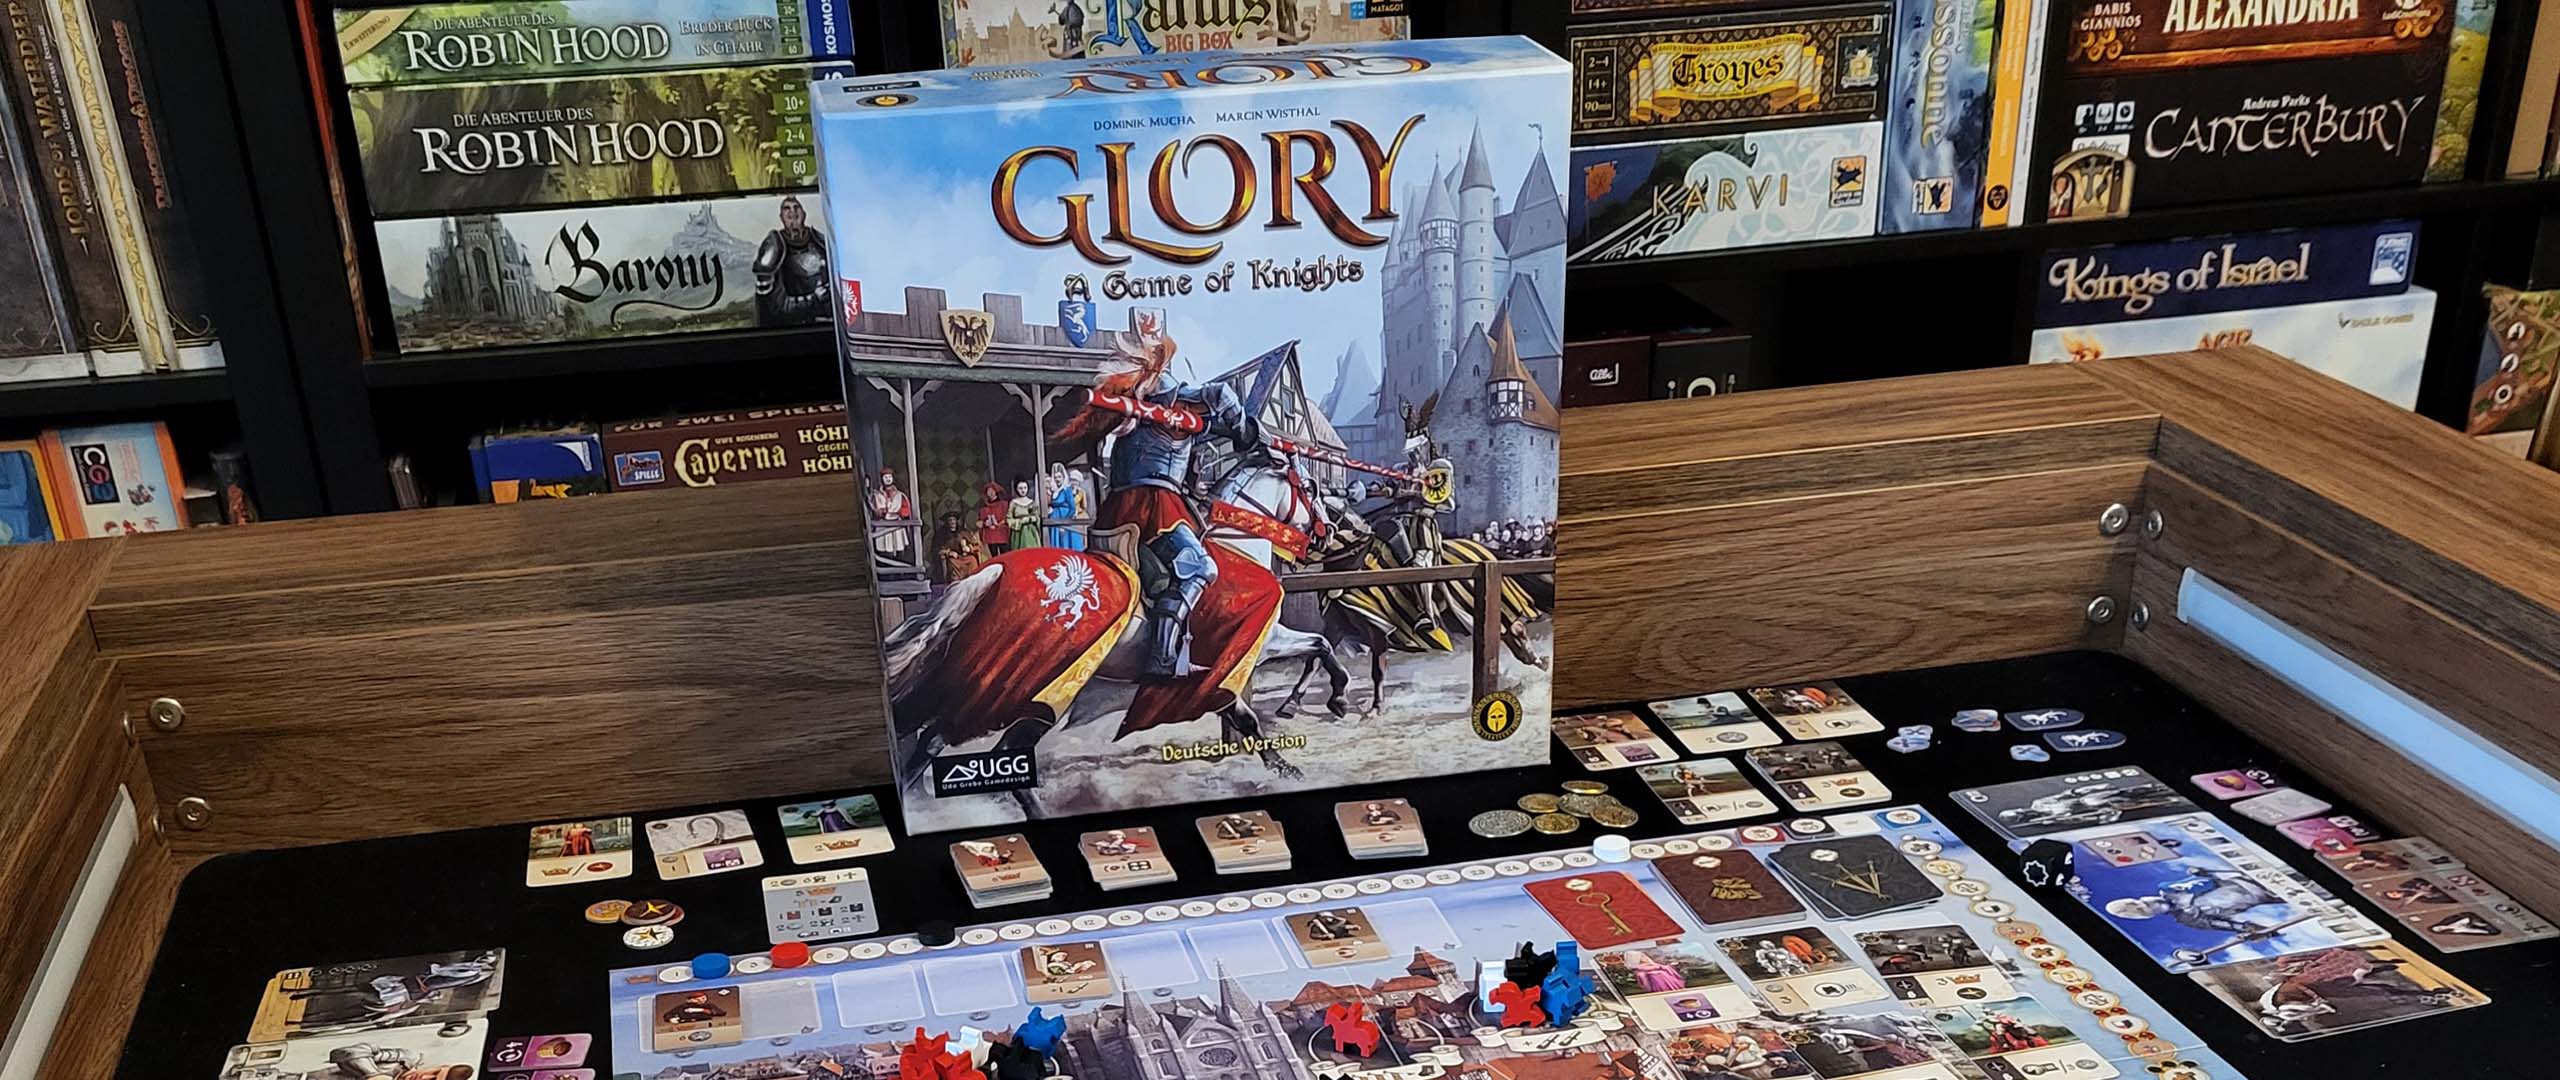 Strategischer Turnierspaß: ›Glory: A Game of Knights‹